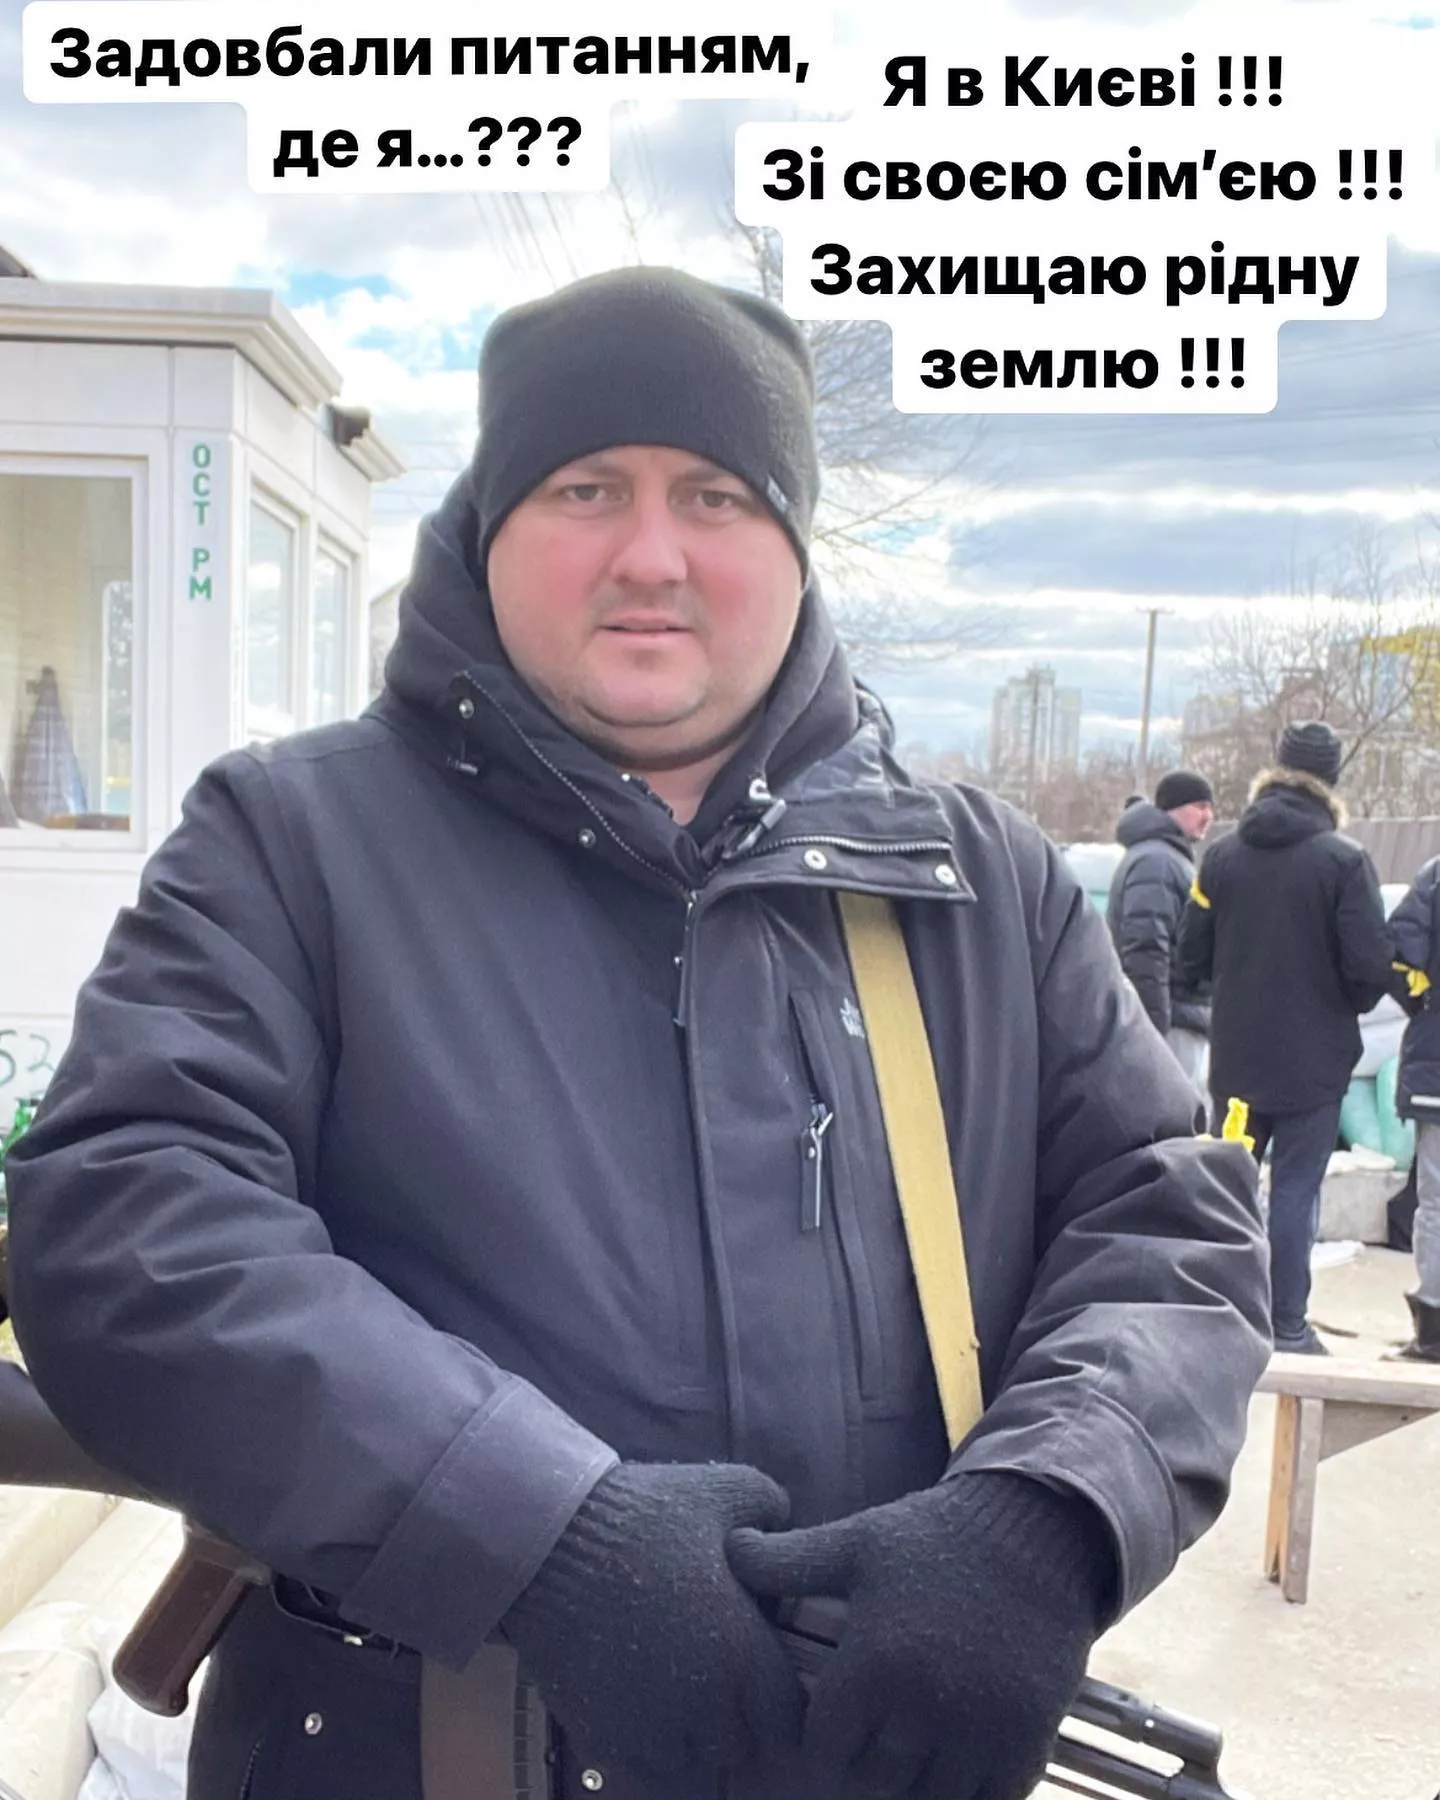 Актер и комик Юрий Ткач вступил в ряды территориальной обороны Киева